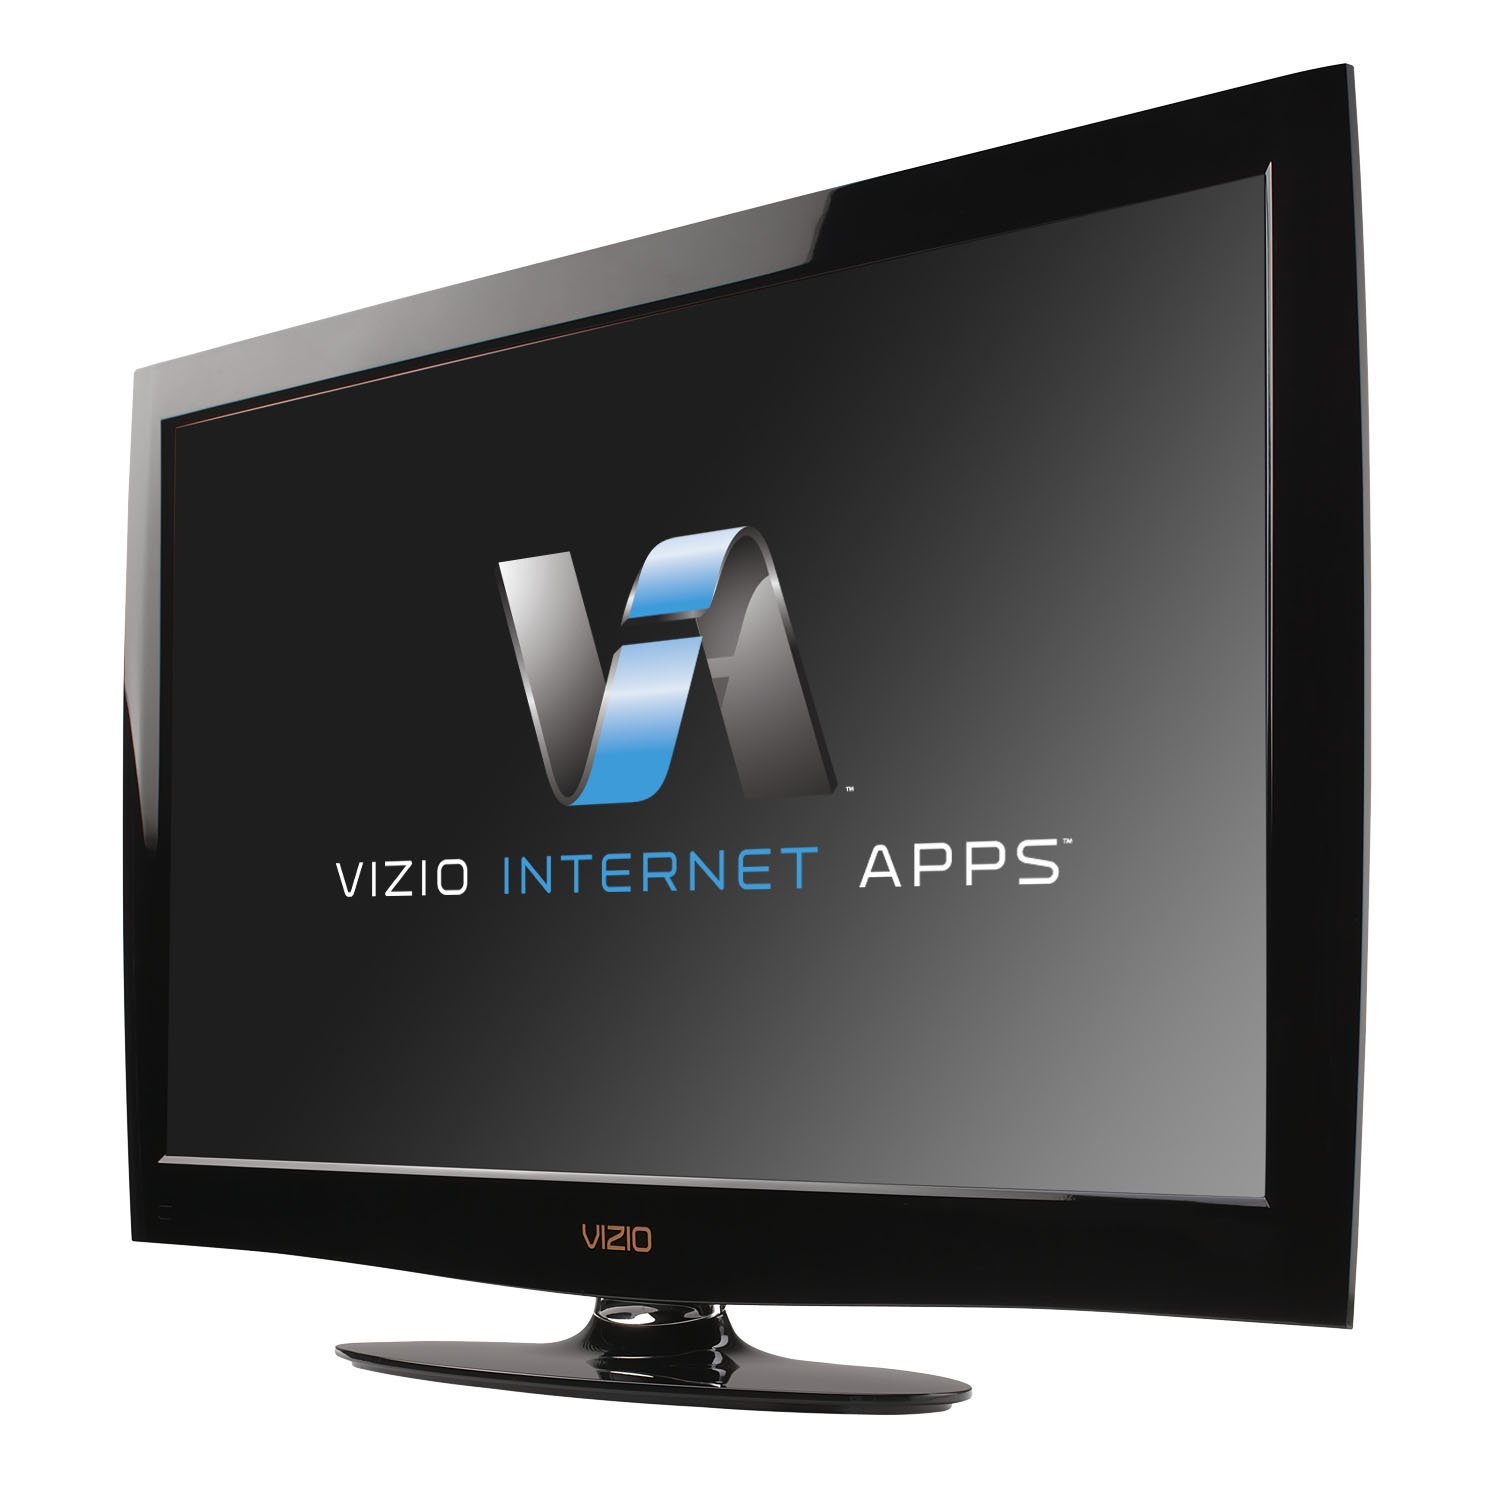 Vizio Led. New VR10 Remote Control fit for VIZIO TV Razor LED LCD HDTV ...